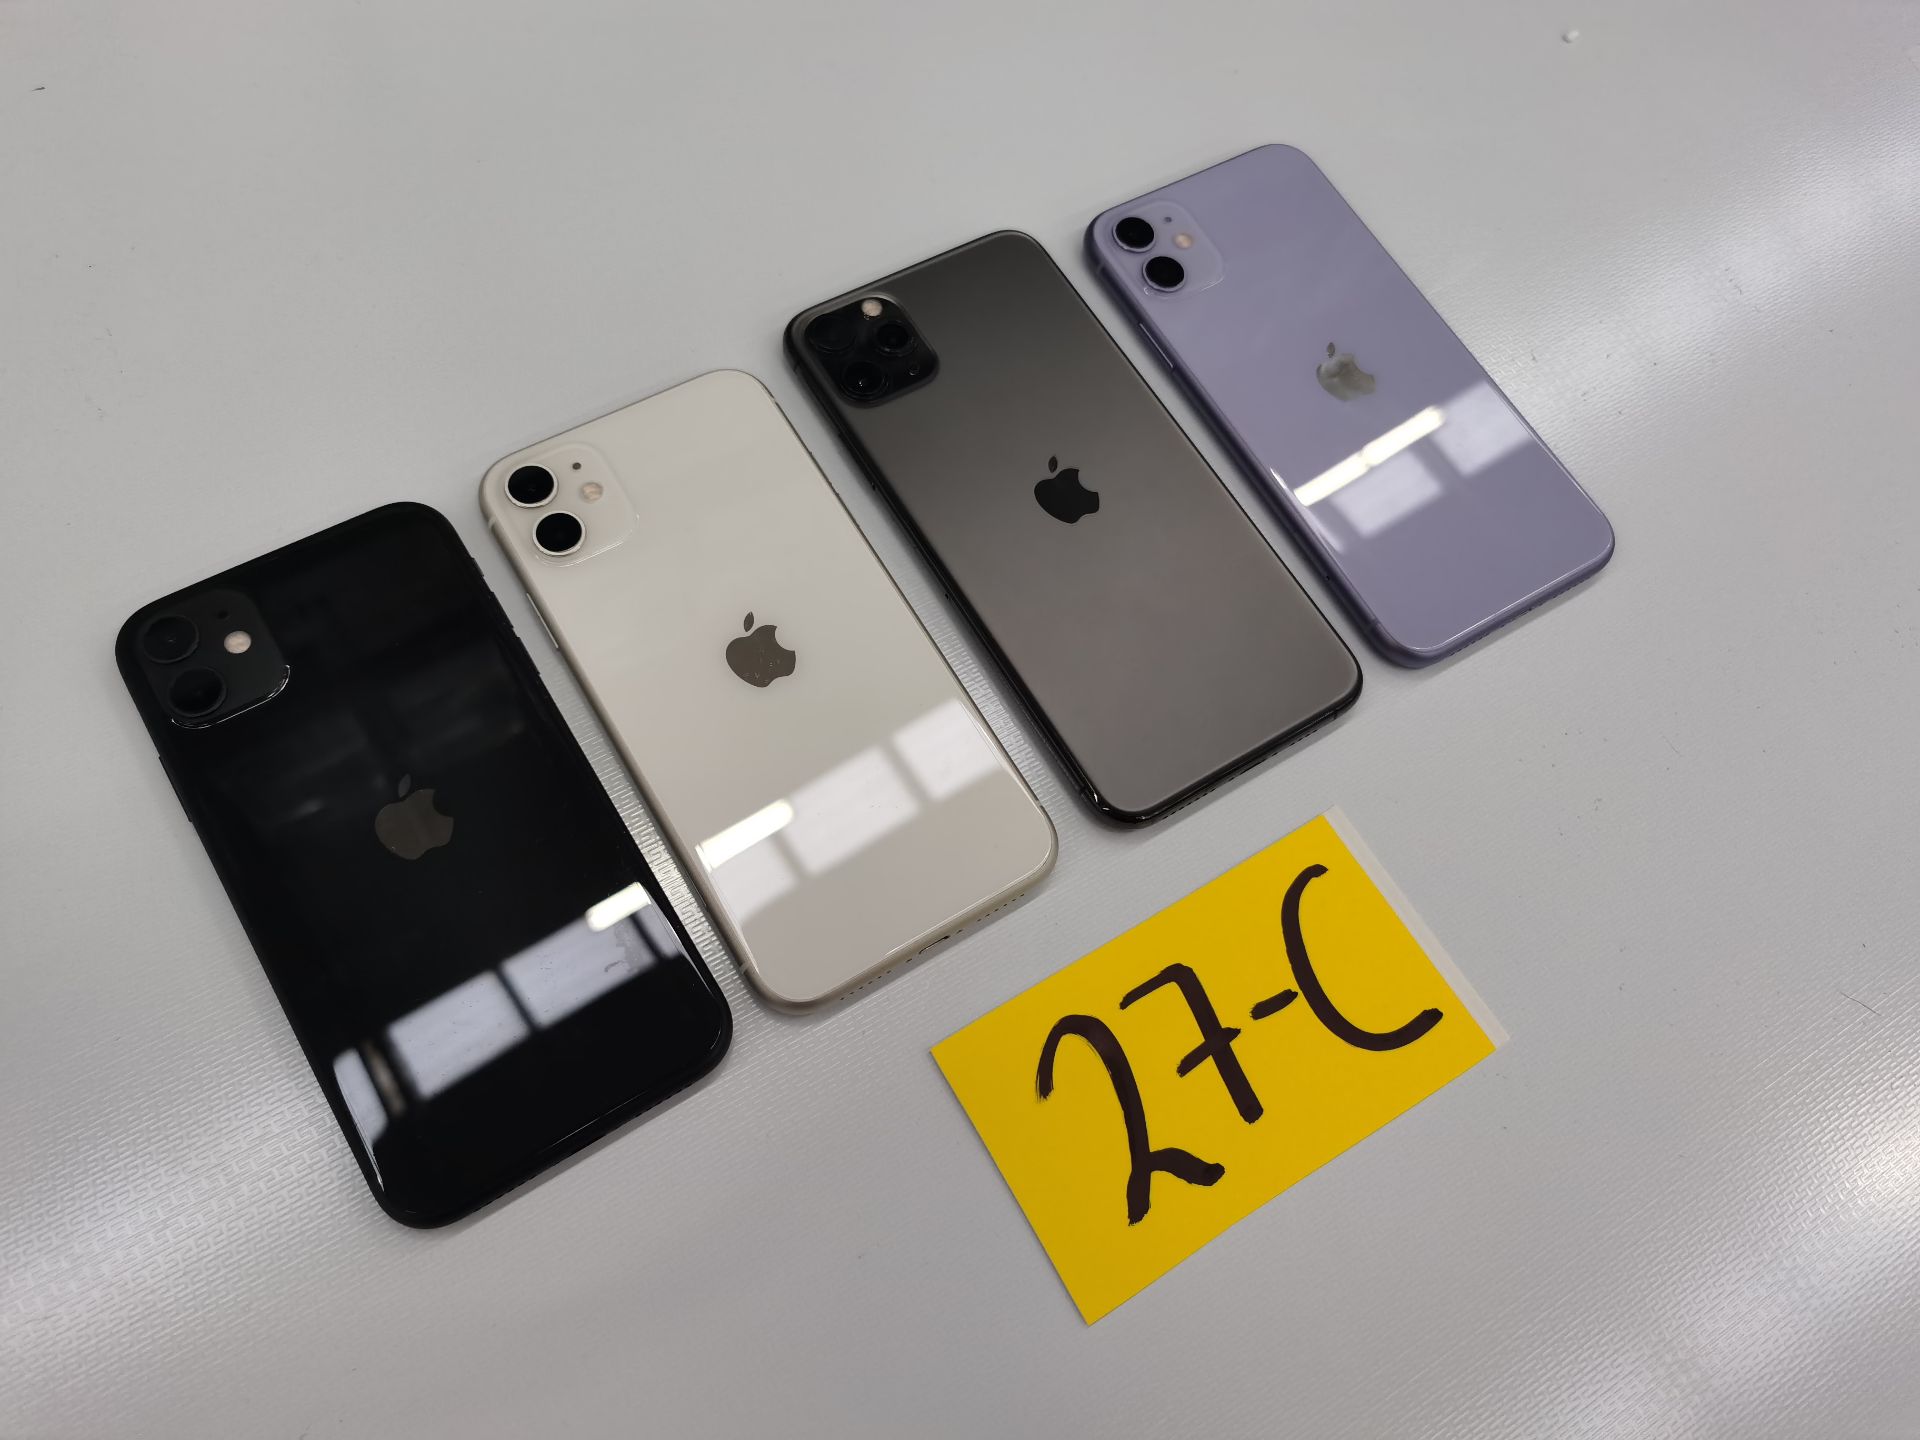 Lote de 4 Equipos Apple: 3 Iphone 11 de 64GB, y 1 Iphone de 128GB - Image 10 of 13